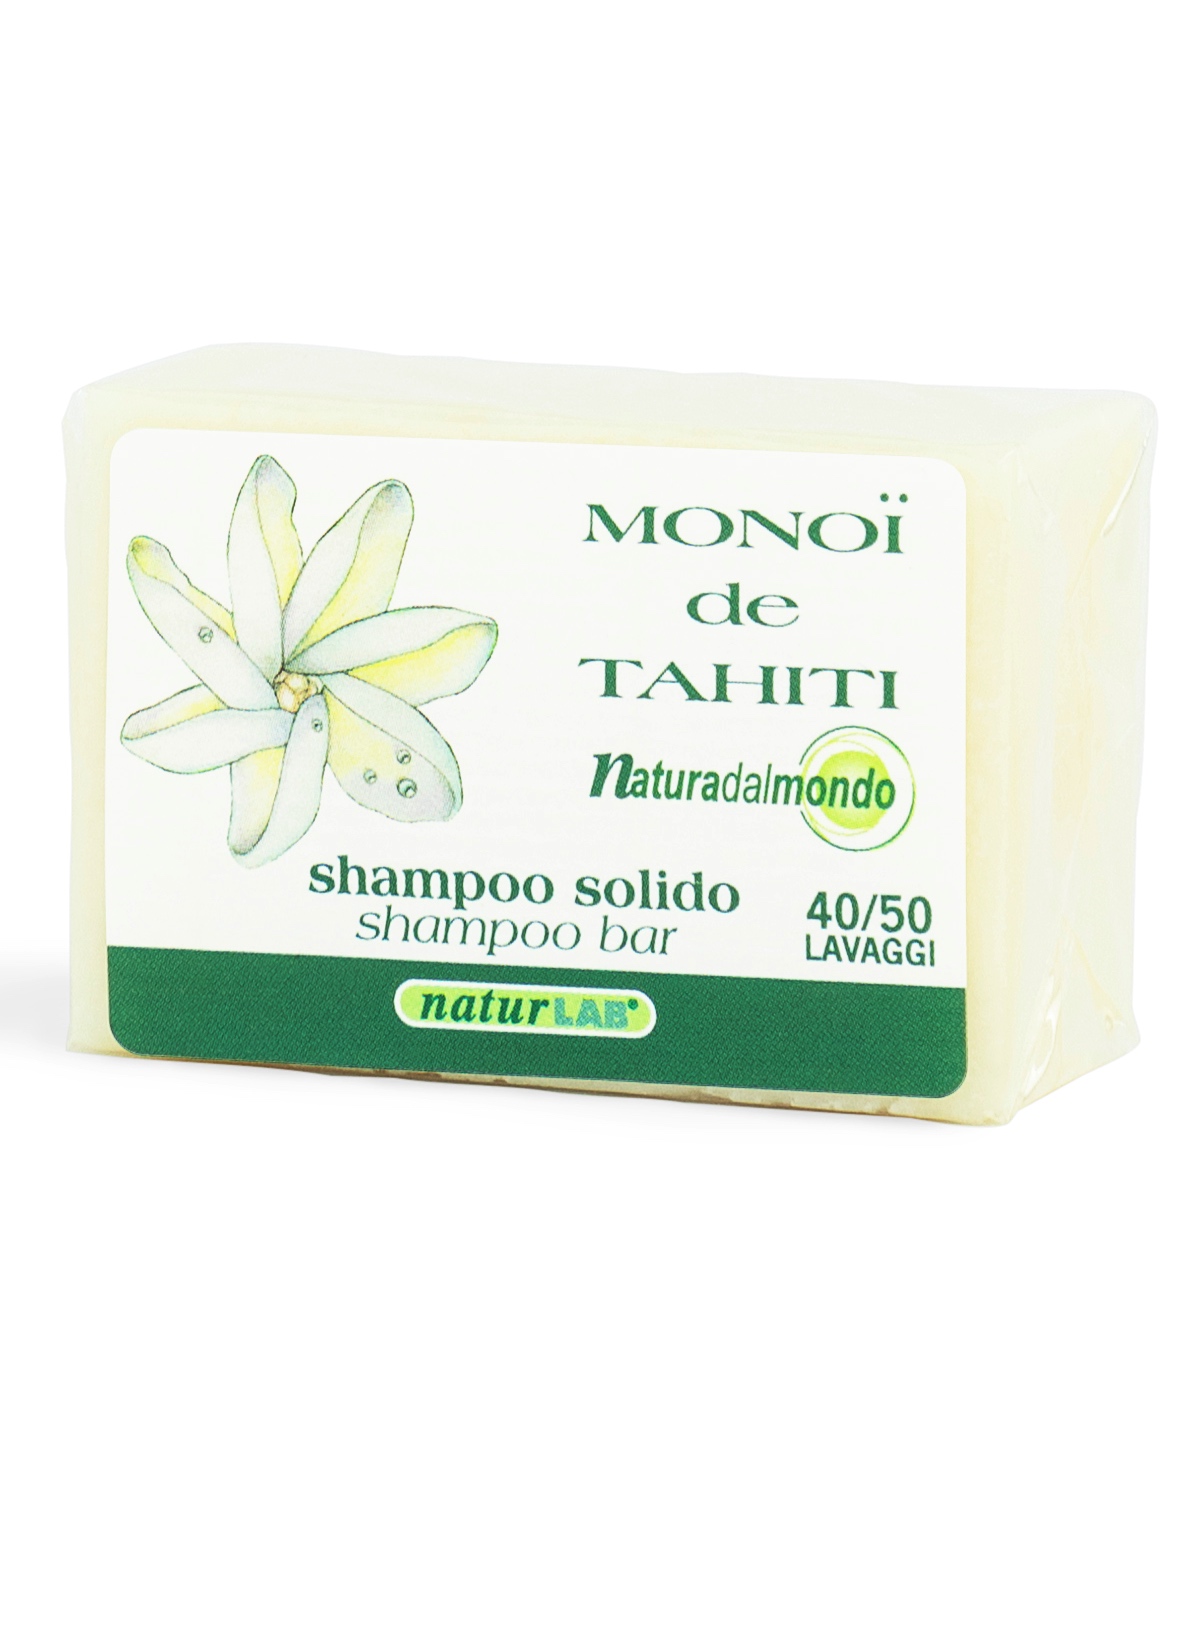 Solidissimi - Shampoo solido al Monoi 55g.